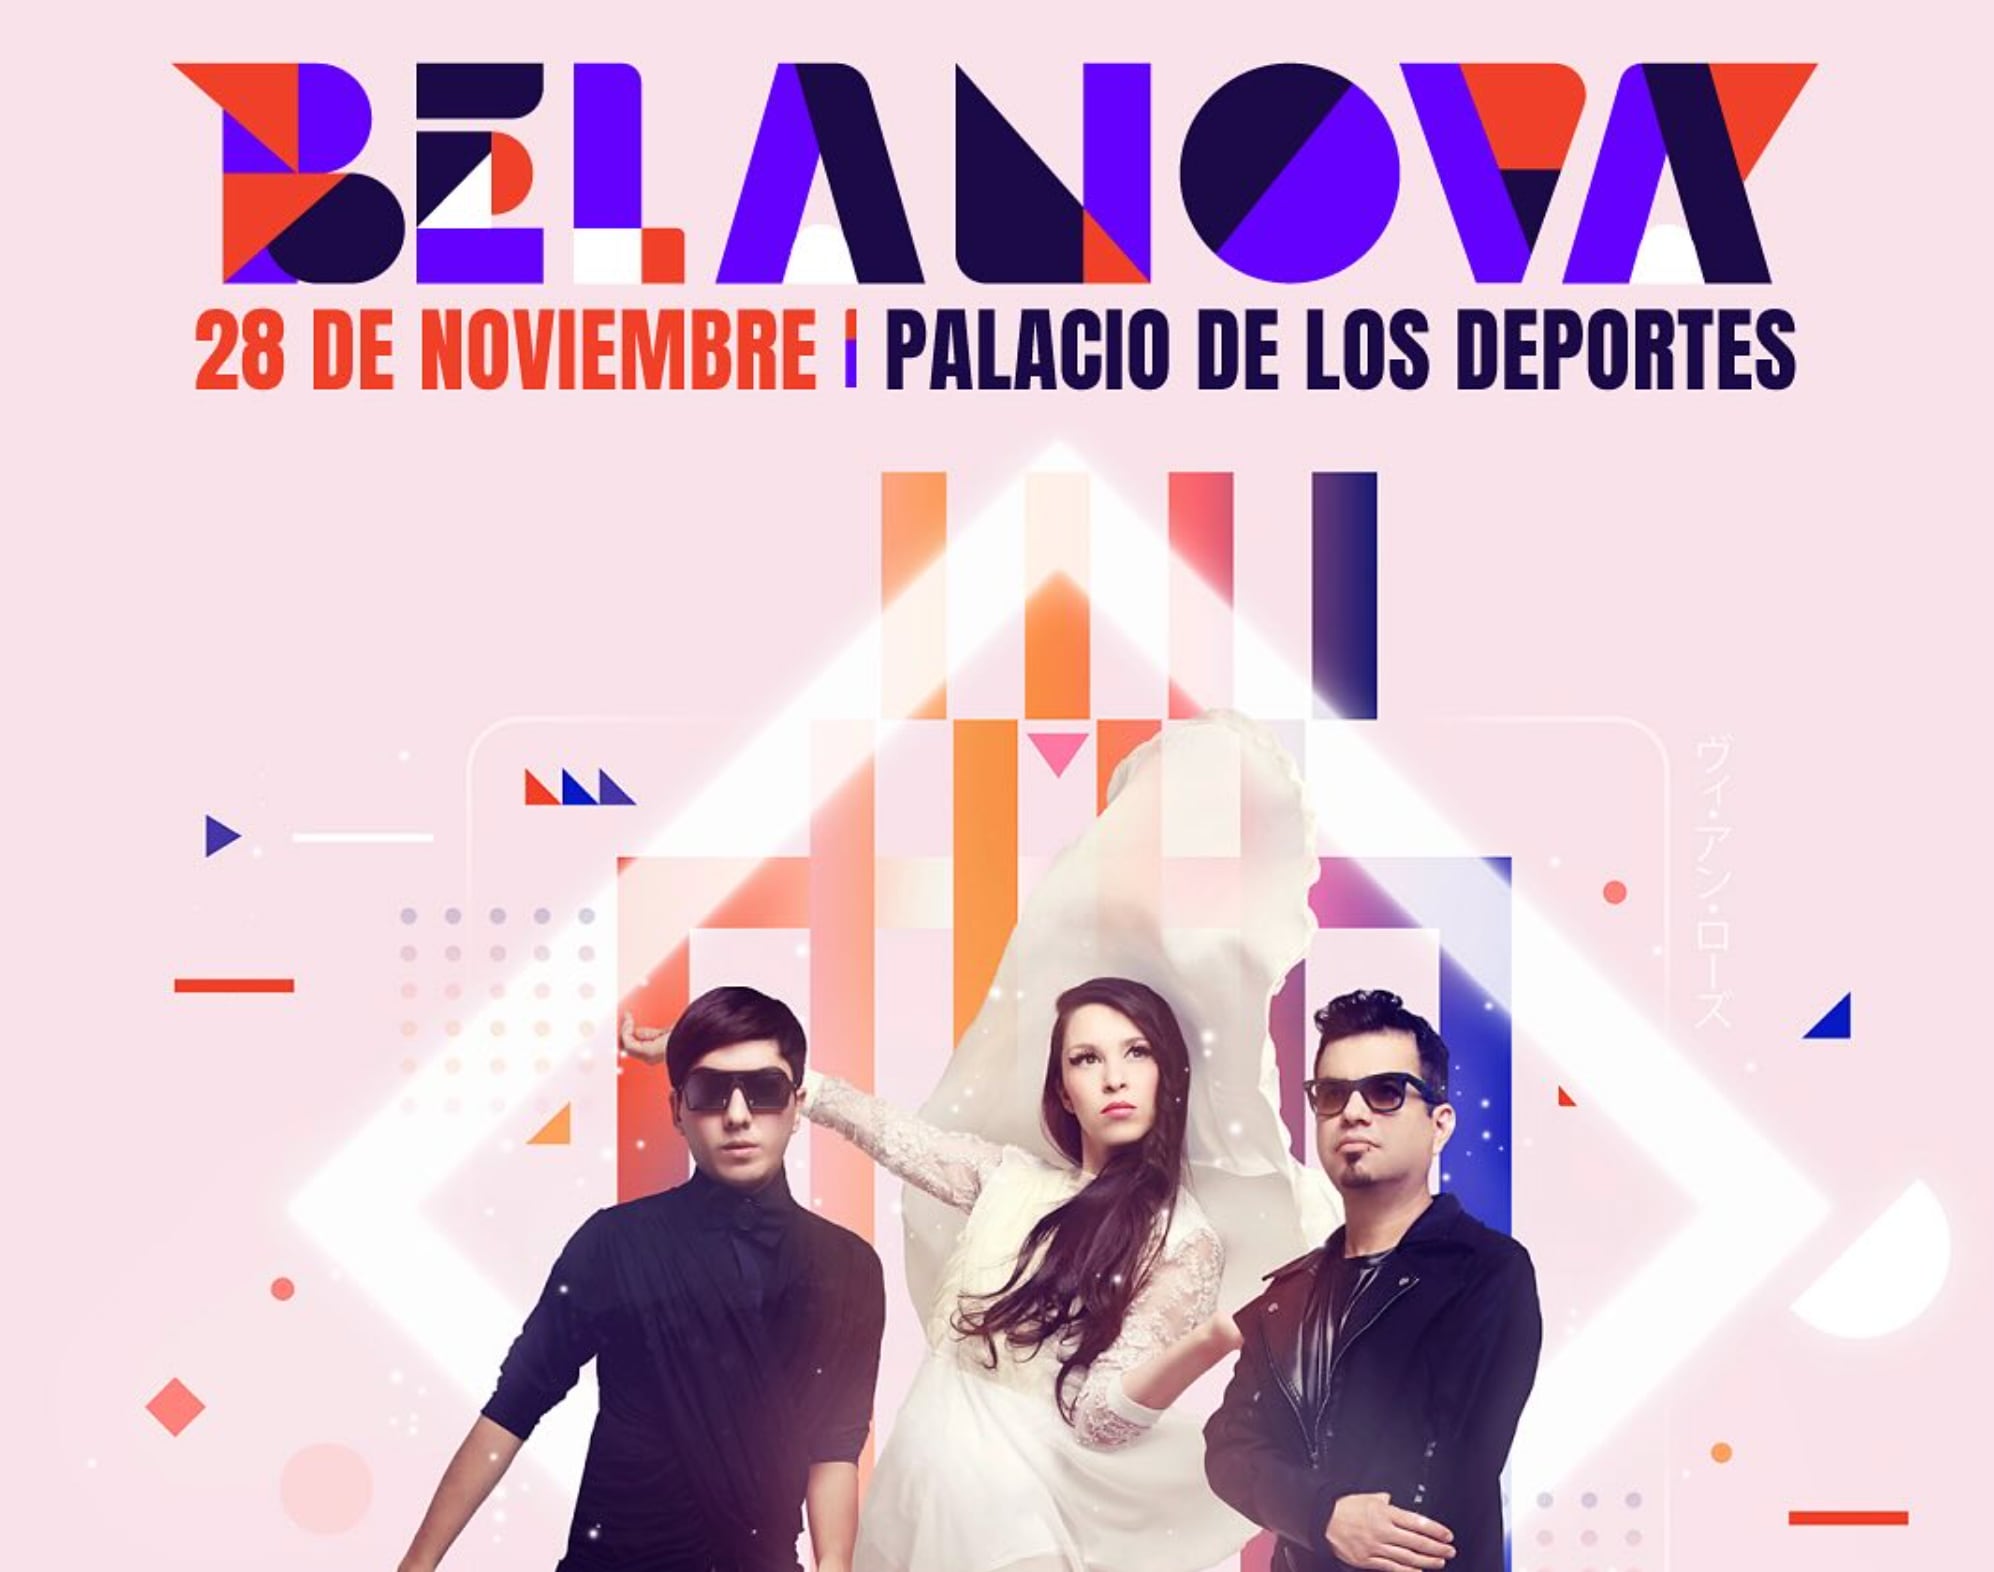 Belanova estará en el 28 de noviembre en el Palacio de los Deportes